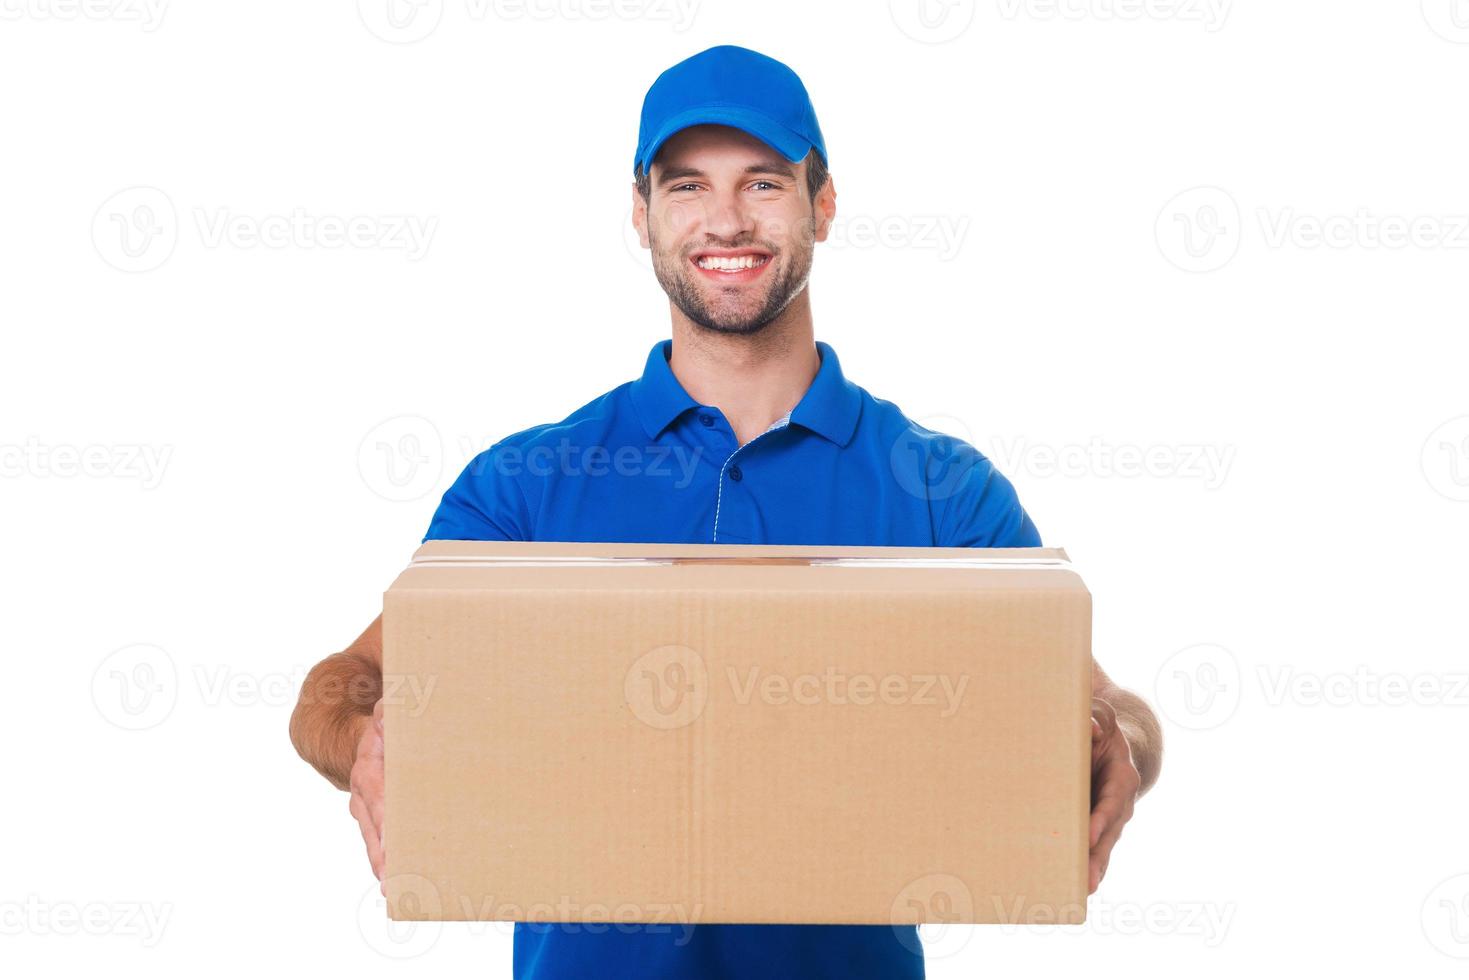 tome su paquete feliz joven mensajero estirando una caja de cartón y sonriendo mientras está de pie contra el fondo blanco foto